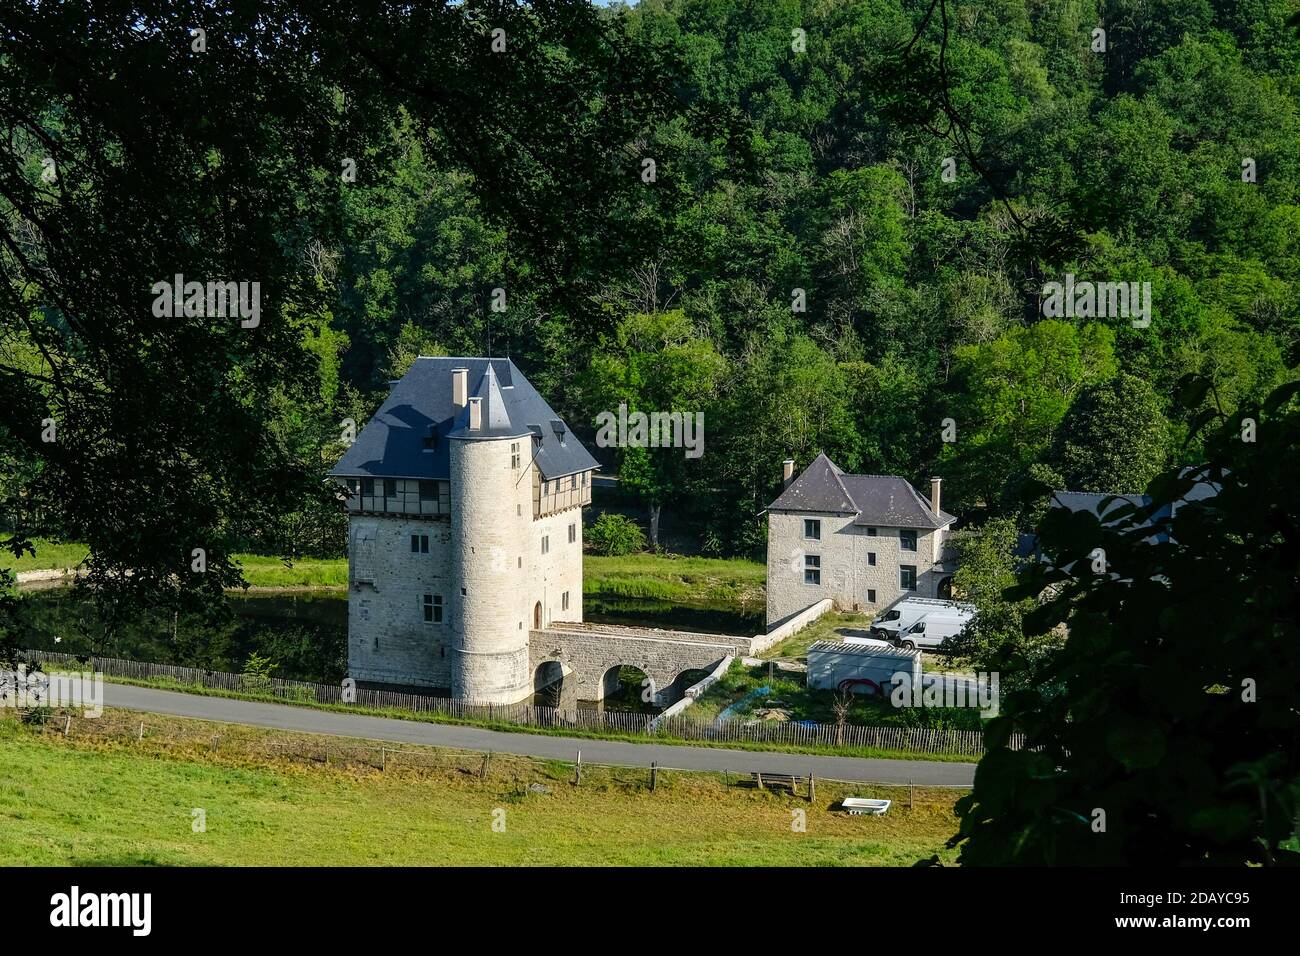 L'illustration montre le château de Crupet, près d'Assee, mercredi 27 mai 2020. BELGA PHOTO BRUNO FAHY Banque D'Images